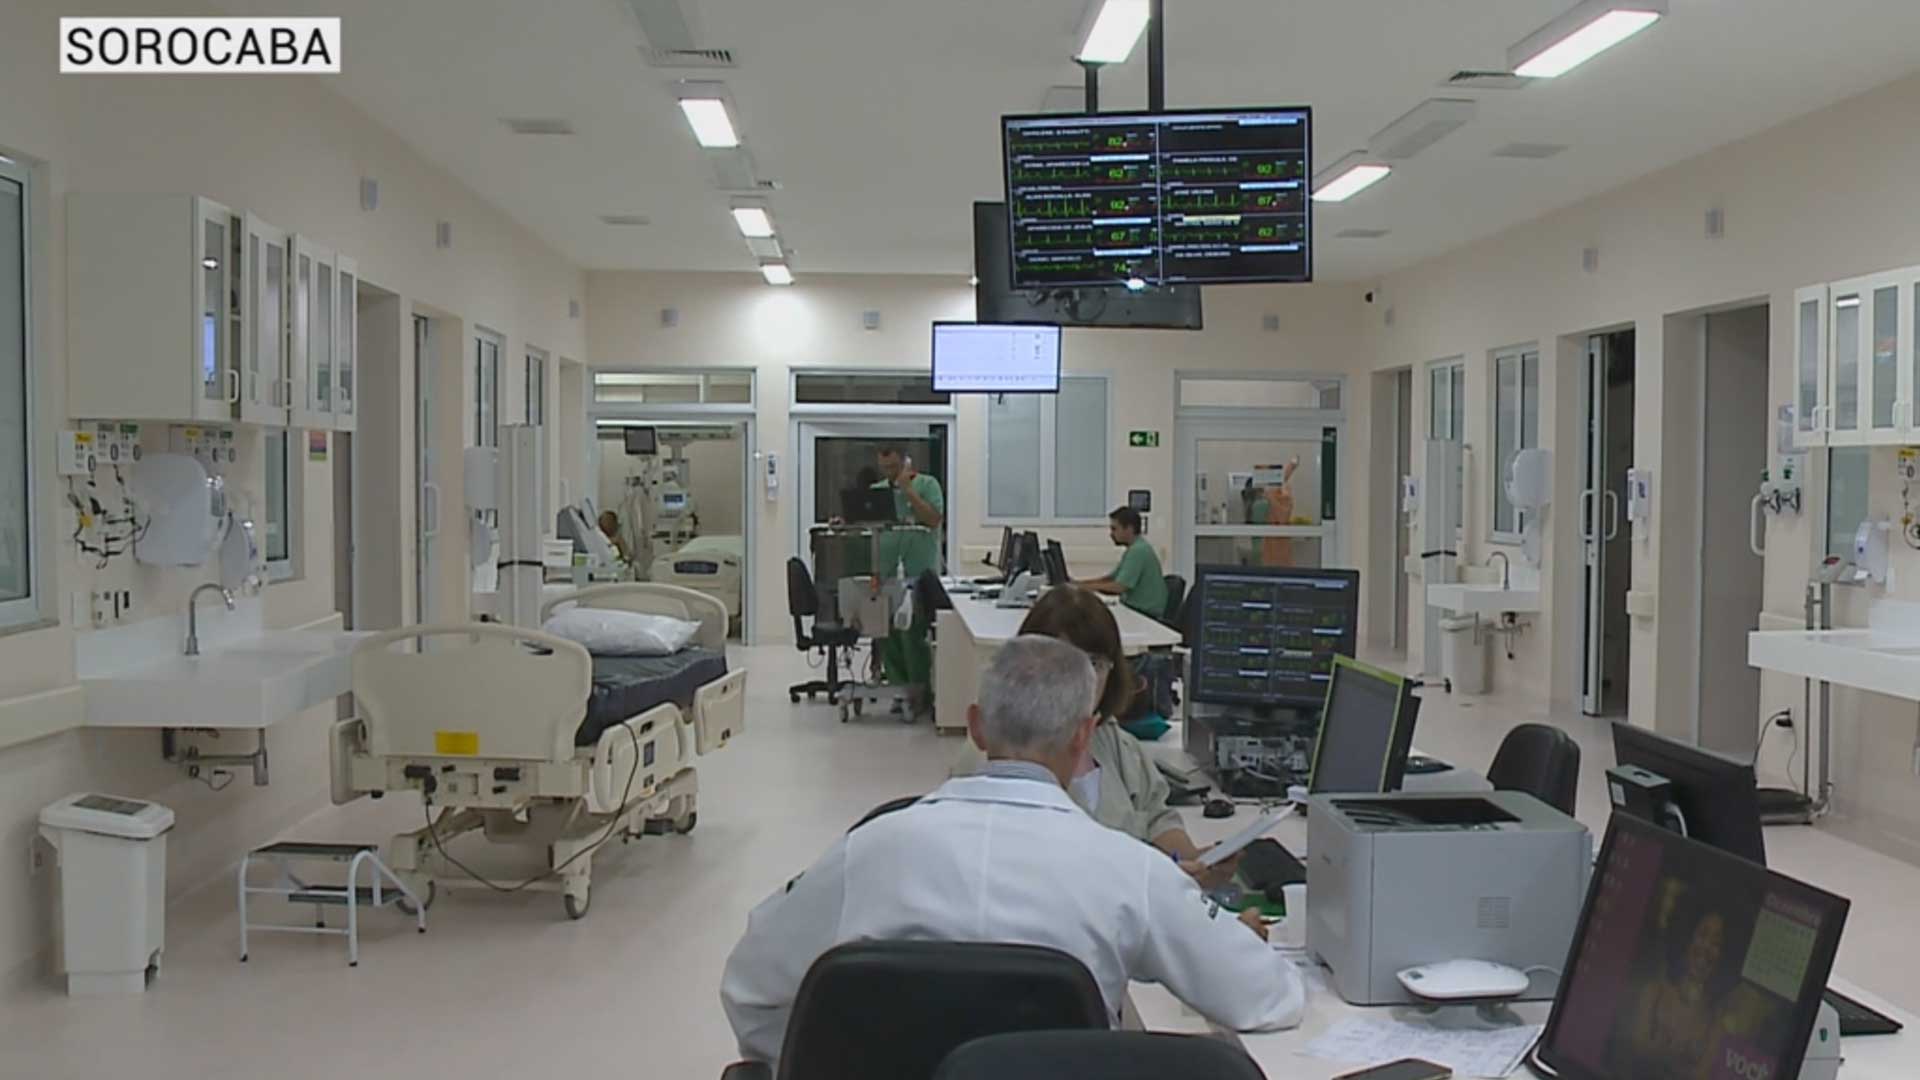 Hospital de Sorocaba ganha selo internacional de segurança e qualidade de atendimento.